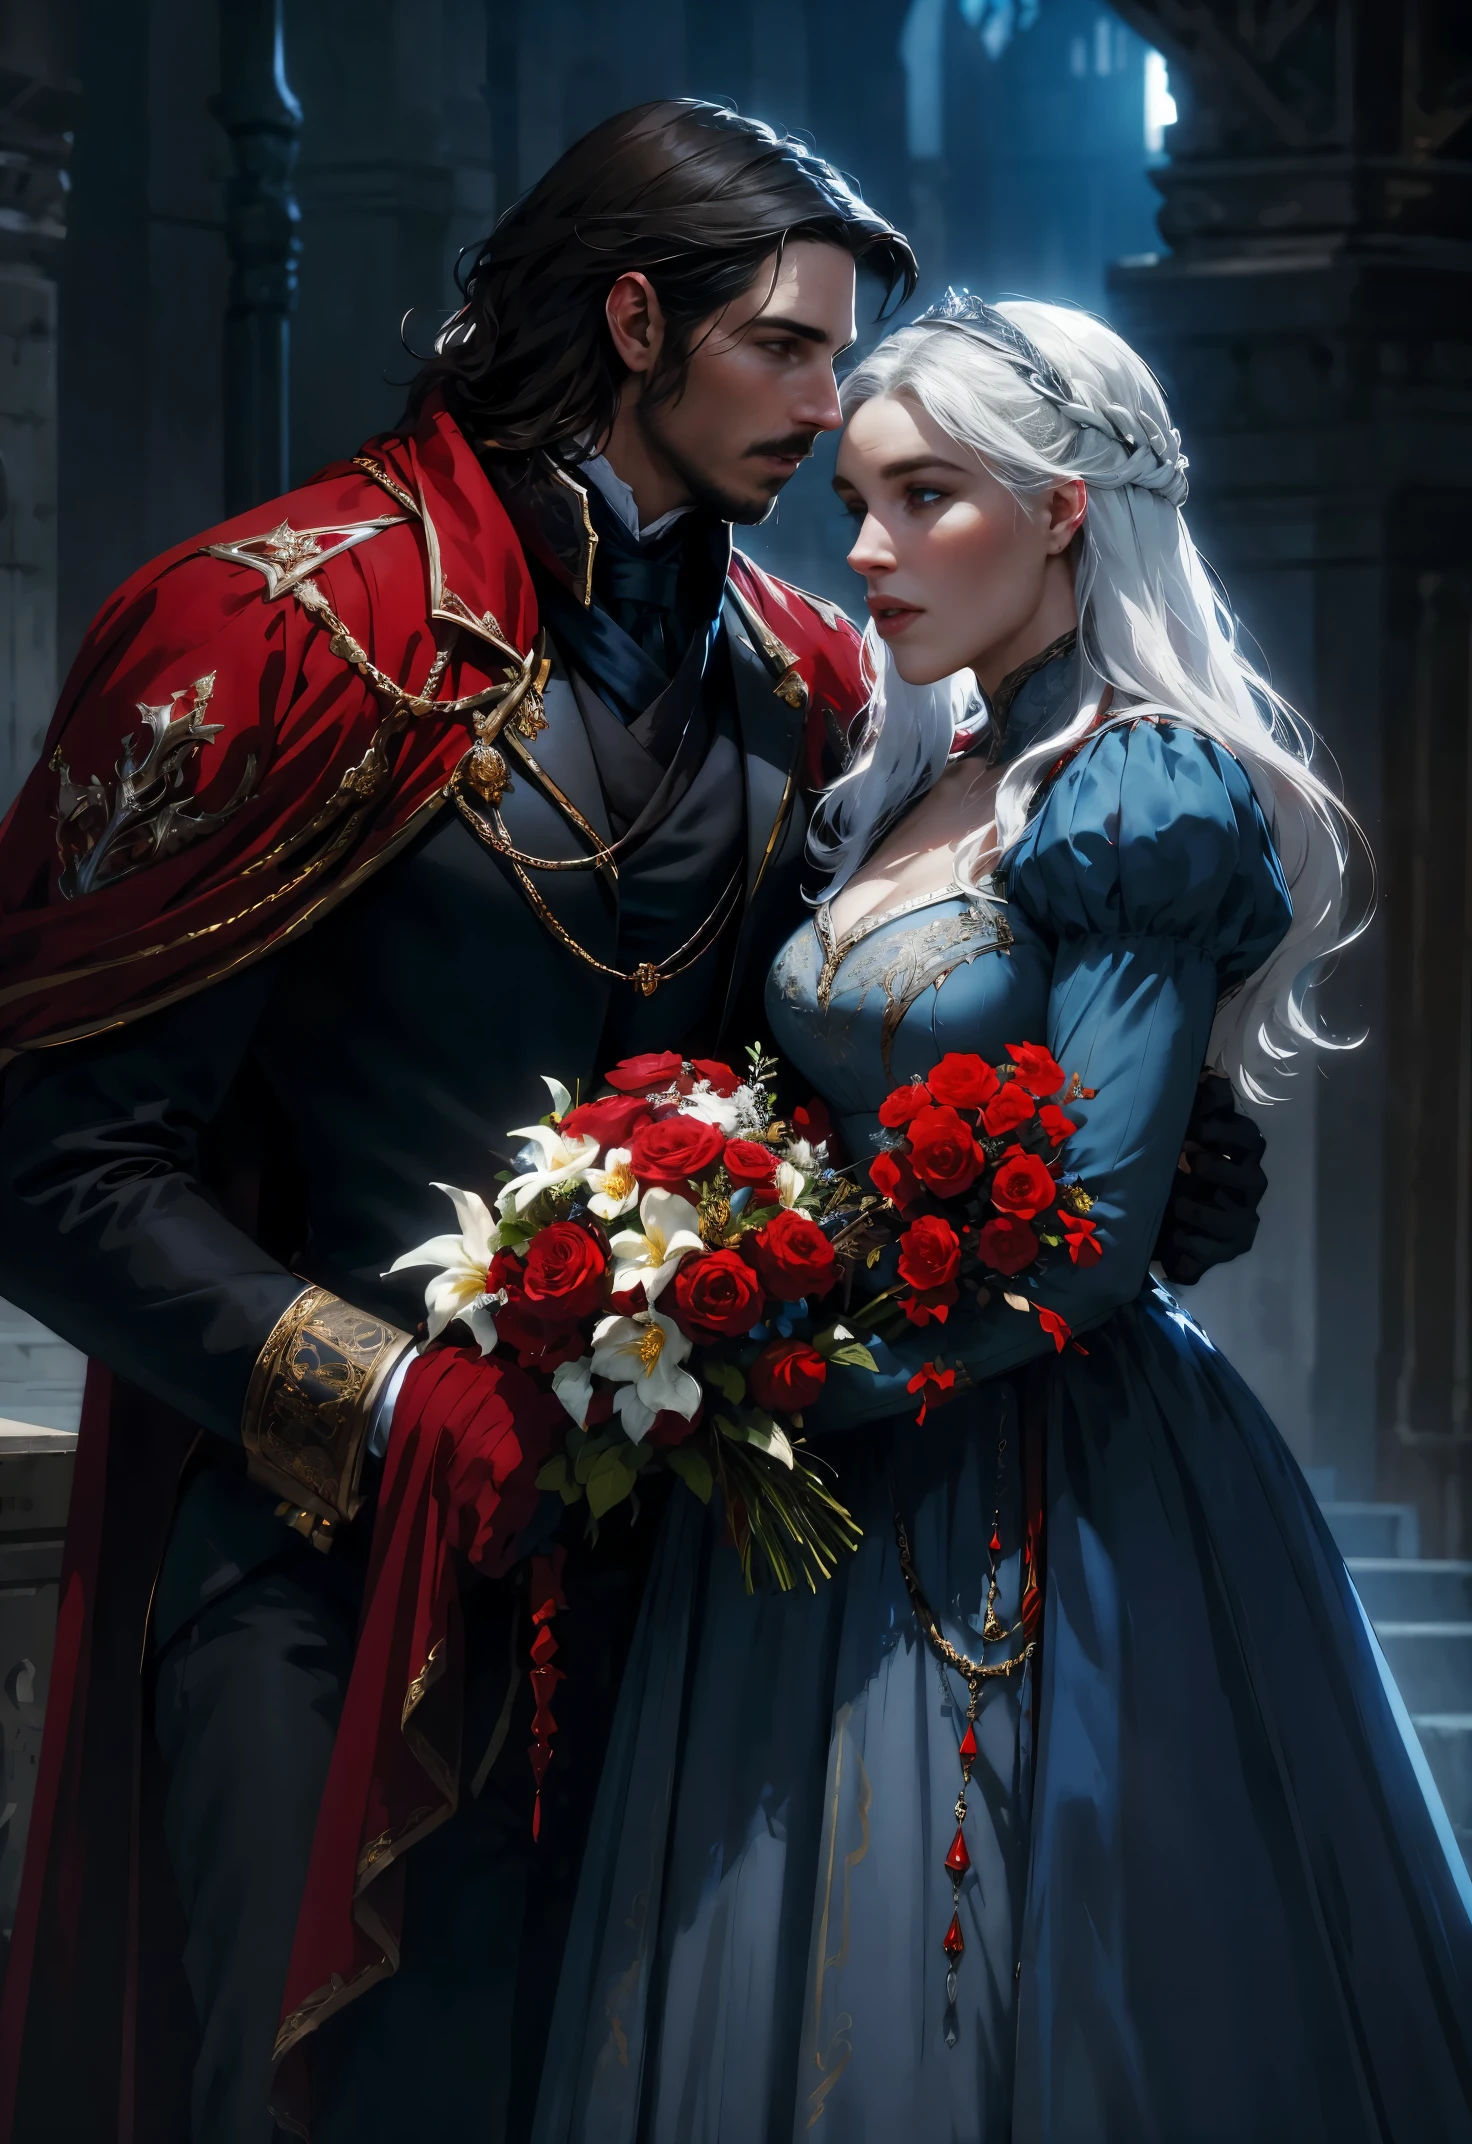 공상, 빨간색, 검은색, 파란색과 흰색 톤, 꽃들, 남자와 여자가 서로 키스하고 있다, 남자 크리스찬 베일 닮았어, 19세기 왕실 제복을 입고, 여자 대너리스 닮았다, 19세기 왕실 드레스를 입고, HD